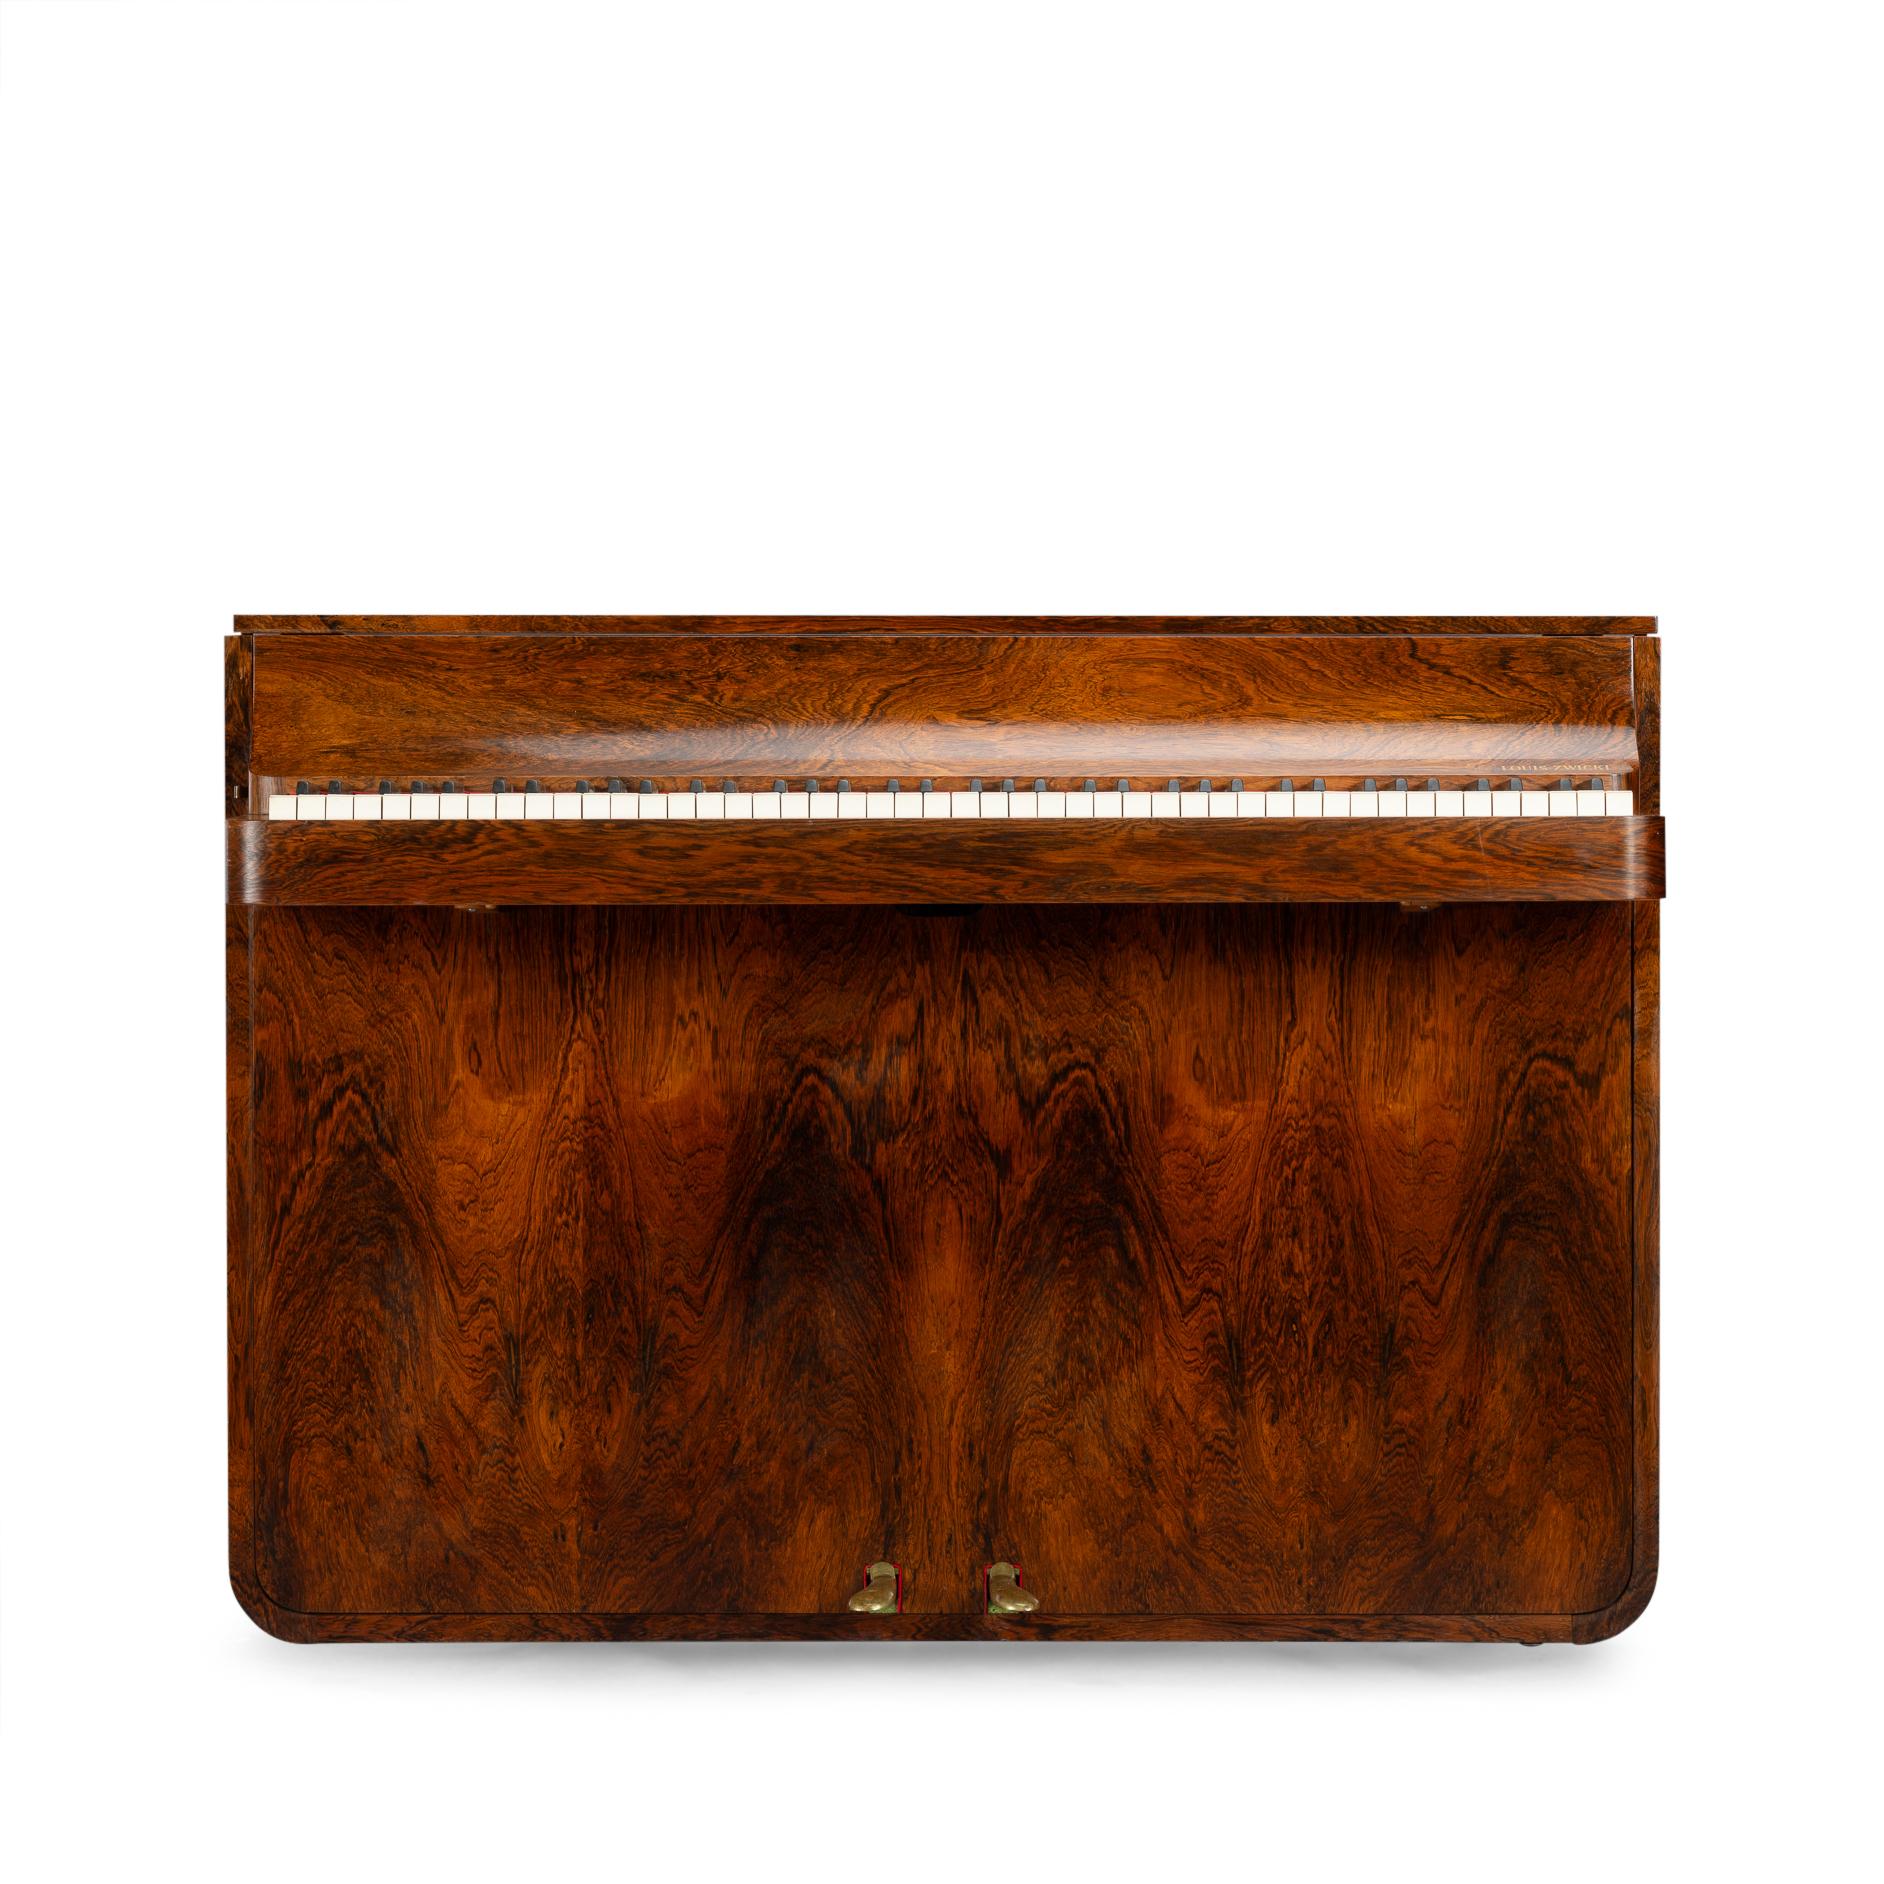 Dänisches Design
Ein seltenes dänisches Klavier aus der Mitte des Jahrhunderts aus wunderschönem Palisanderholz mit Dämpfer. Es wird Pianette genannt, weil es 82 Tasten hat und nicht die üblichen 88 eines großen Klaviers. Dieses Klavier ist ein Werk